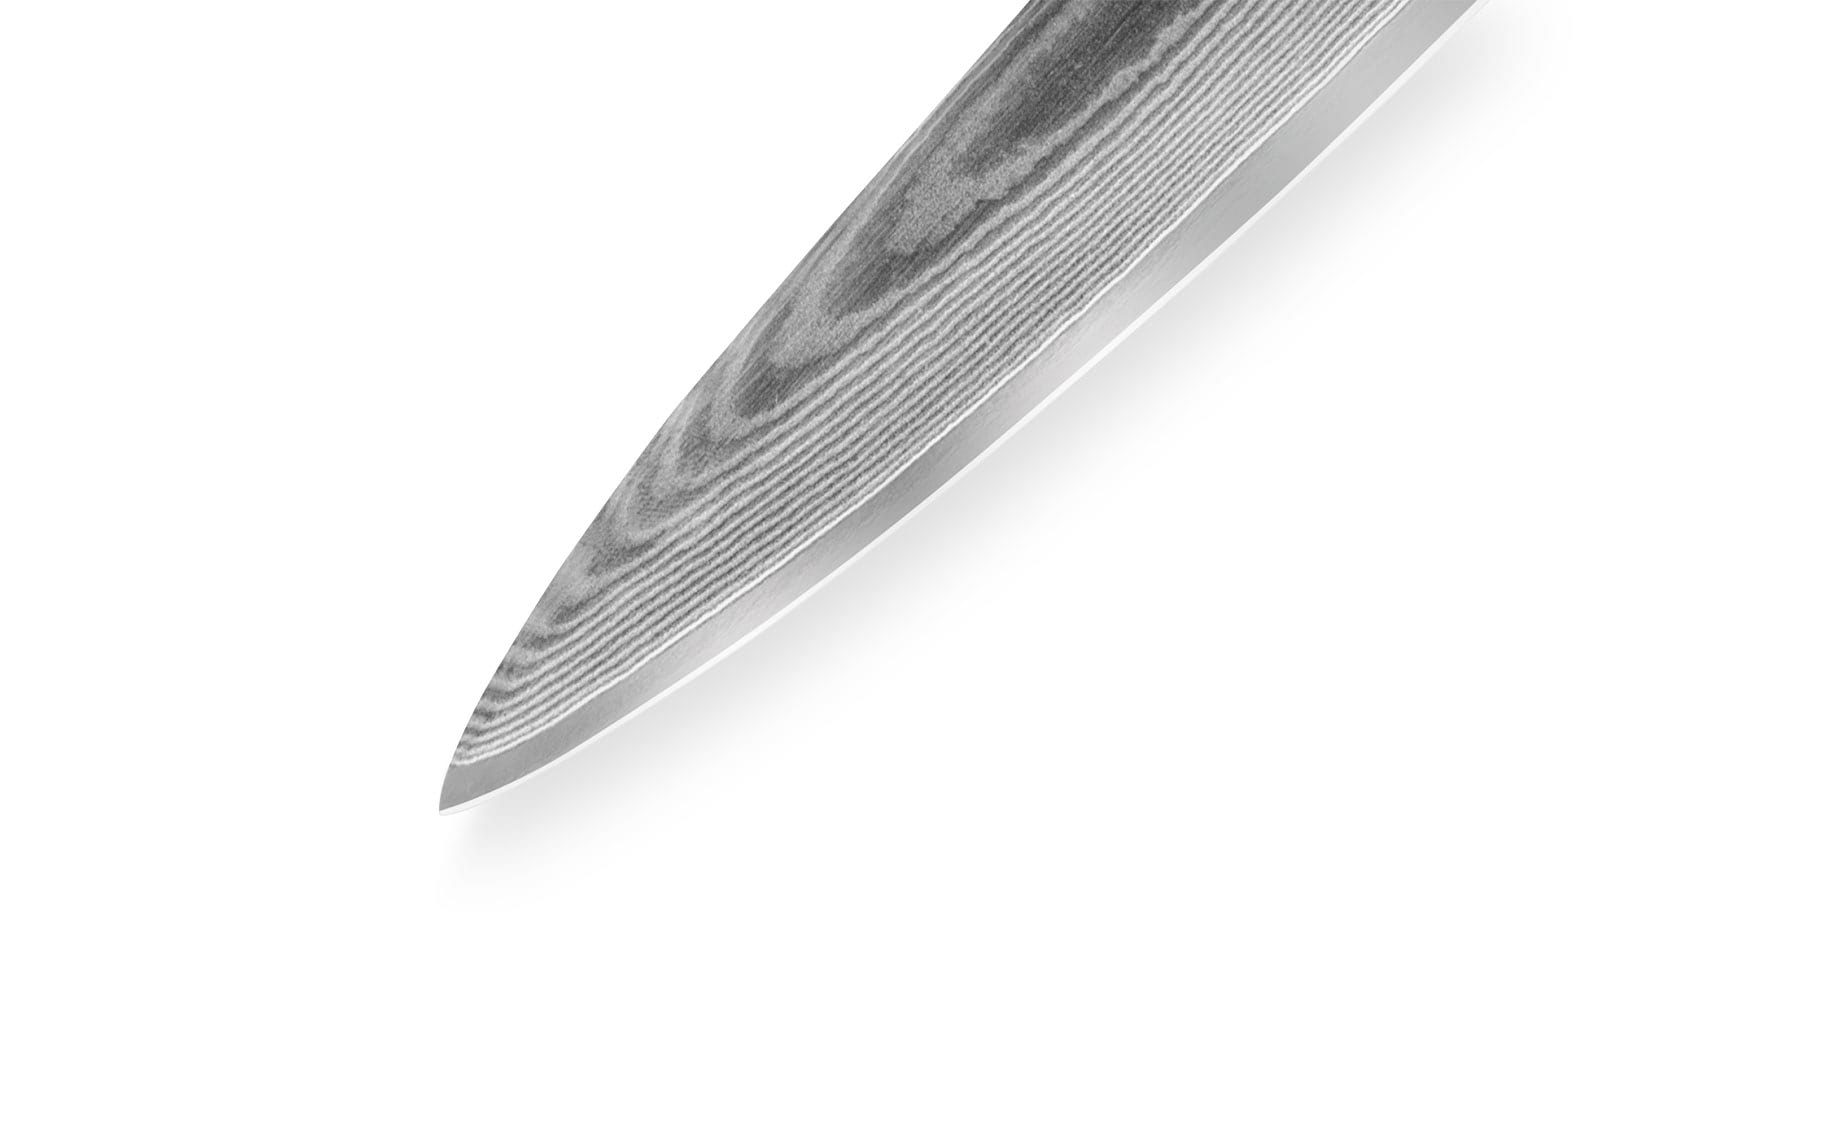 Samura Damascus Utility nož 15cm